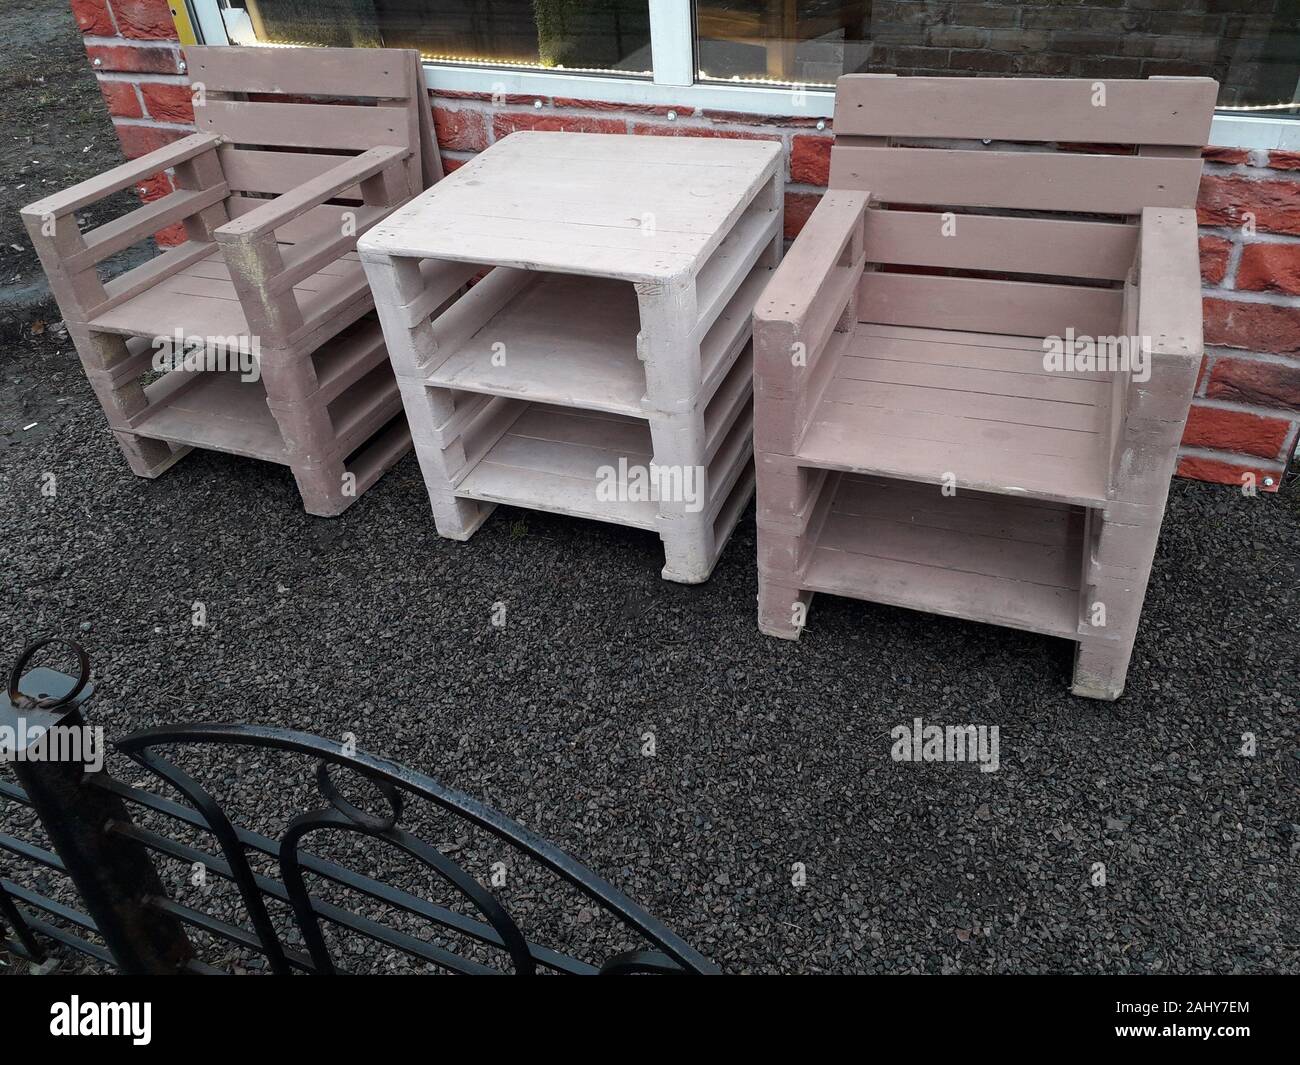 Muebles para cafe mesa y sillas de palets Fotografía de stock - Alamy